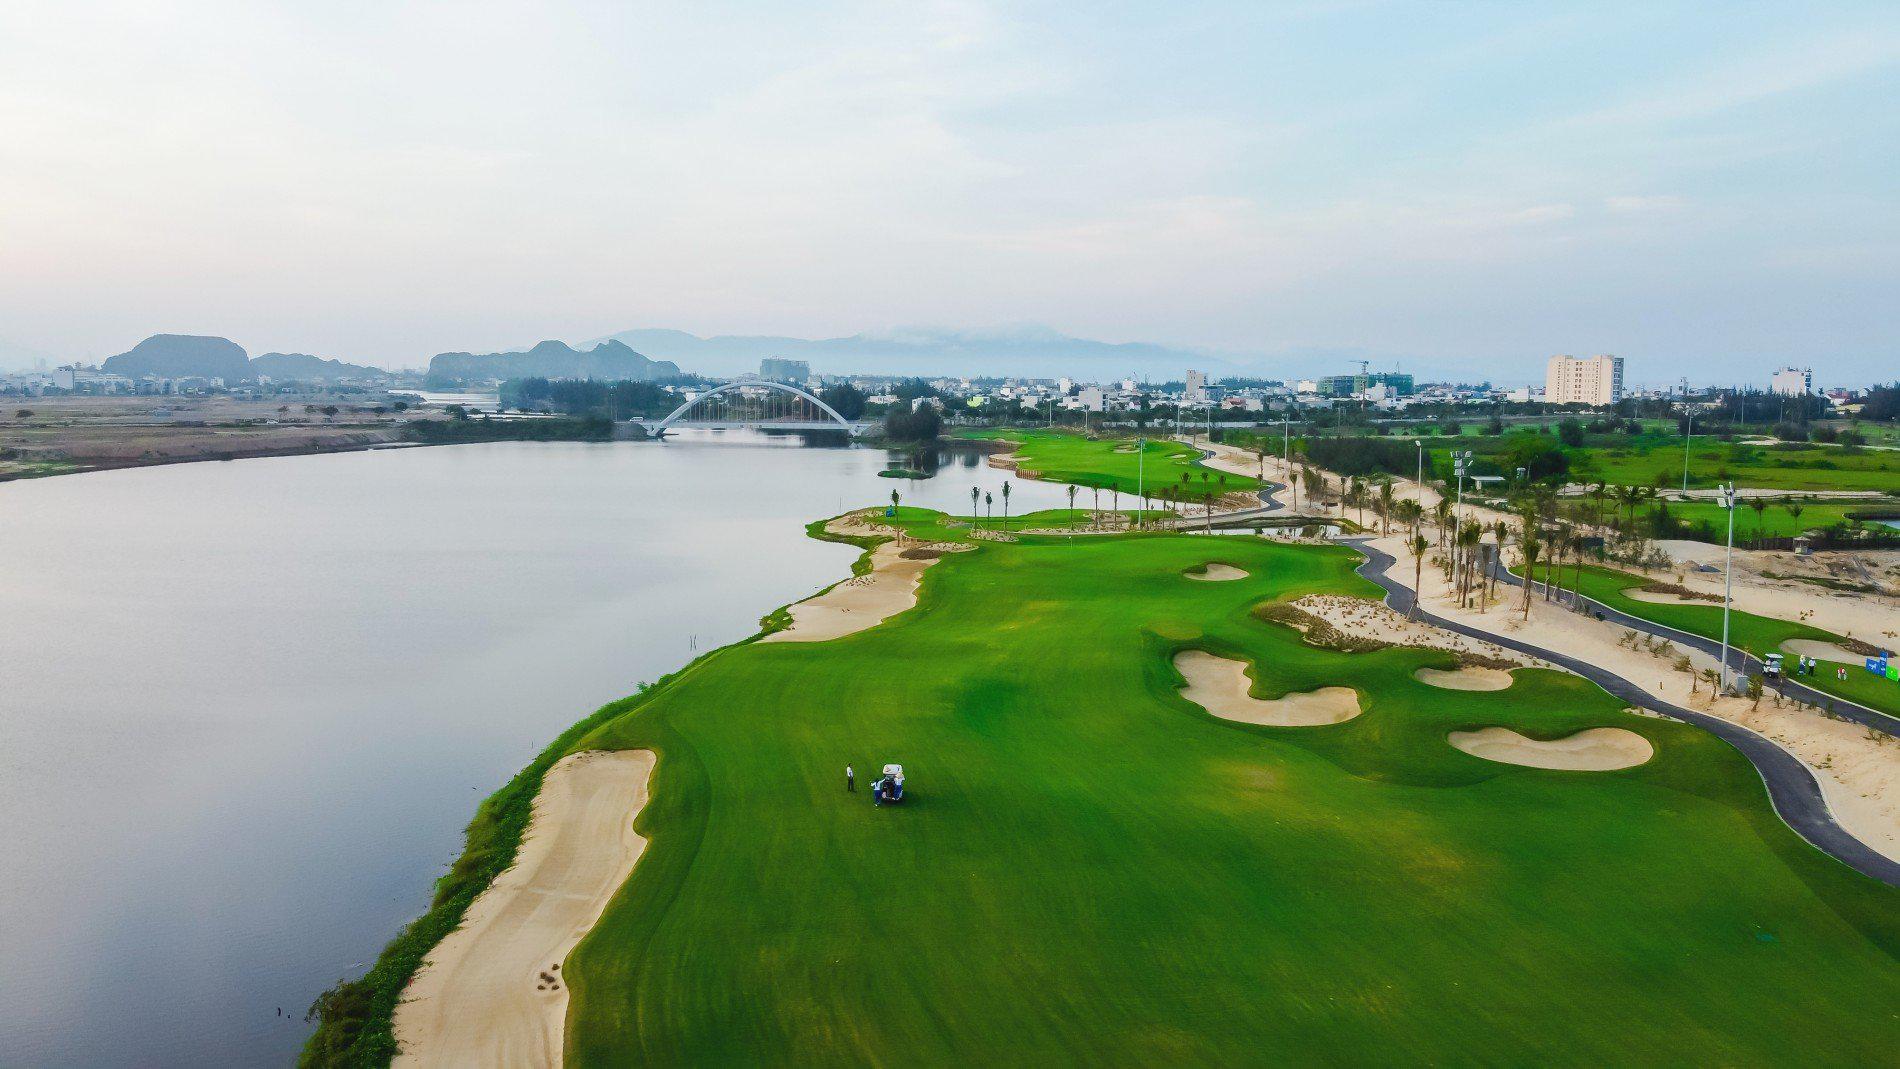 Đặt tee off sân golf BRG Danang Golf Resort - 9 hố - Cuối tuần